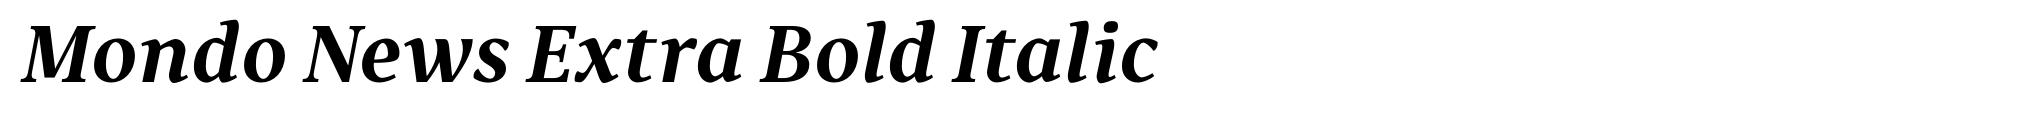 Mondo News Extra Bold Italic image